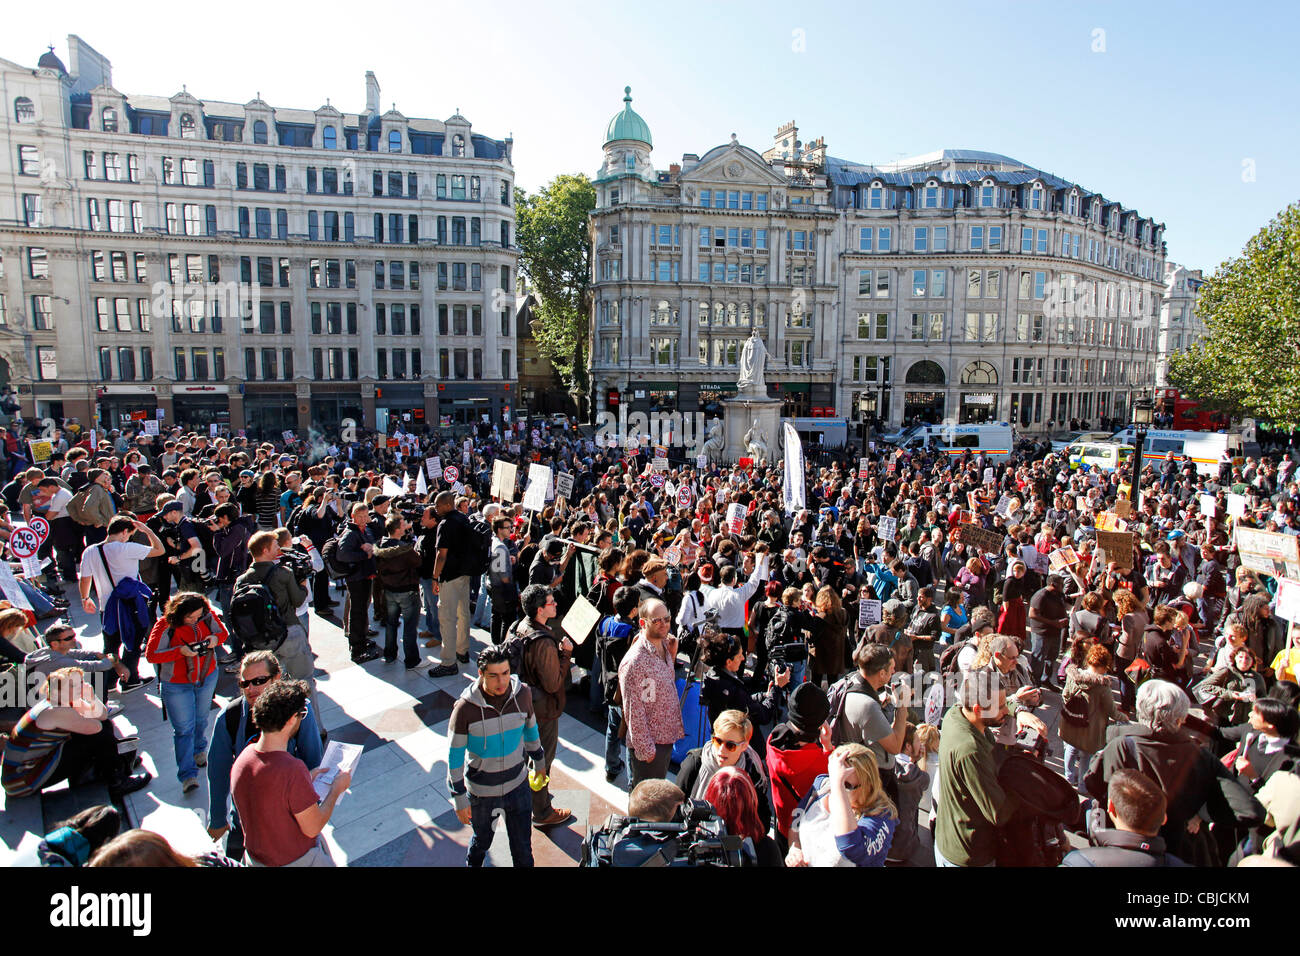 Ocupar la Bolsa de Londres manifestación contra los recortes y los banqueros organizado por ocupar Londres como una protesta pacífica. Foto de stock